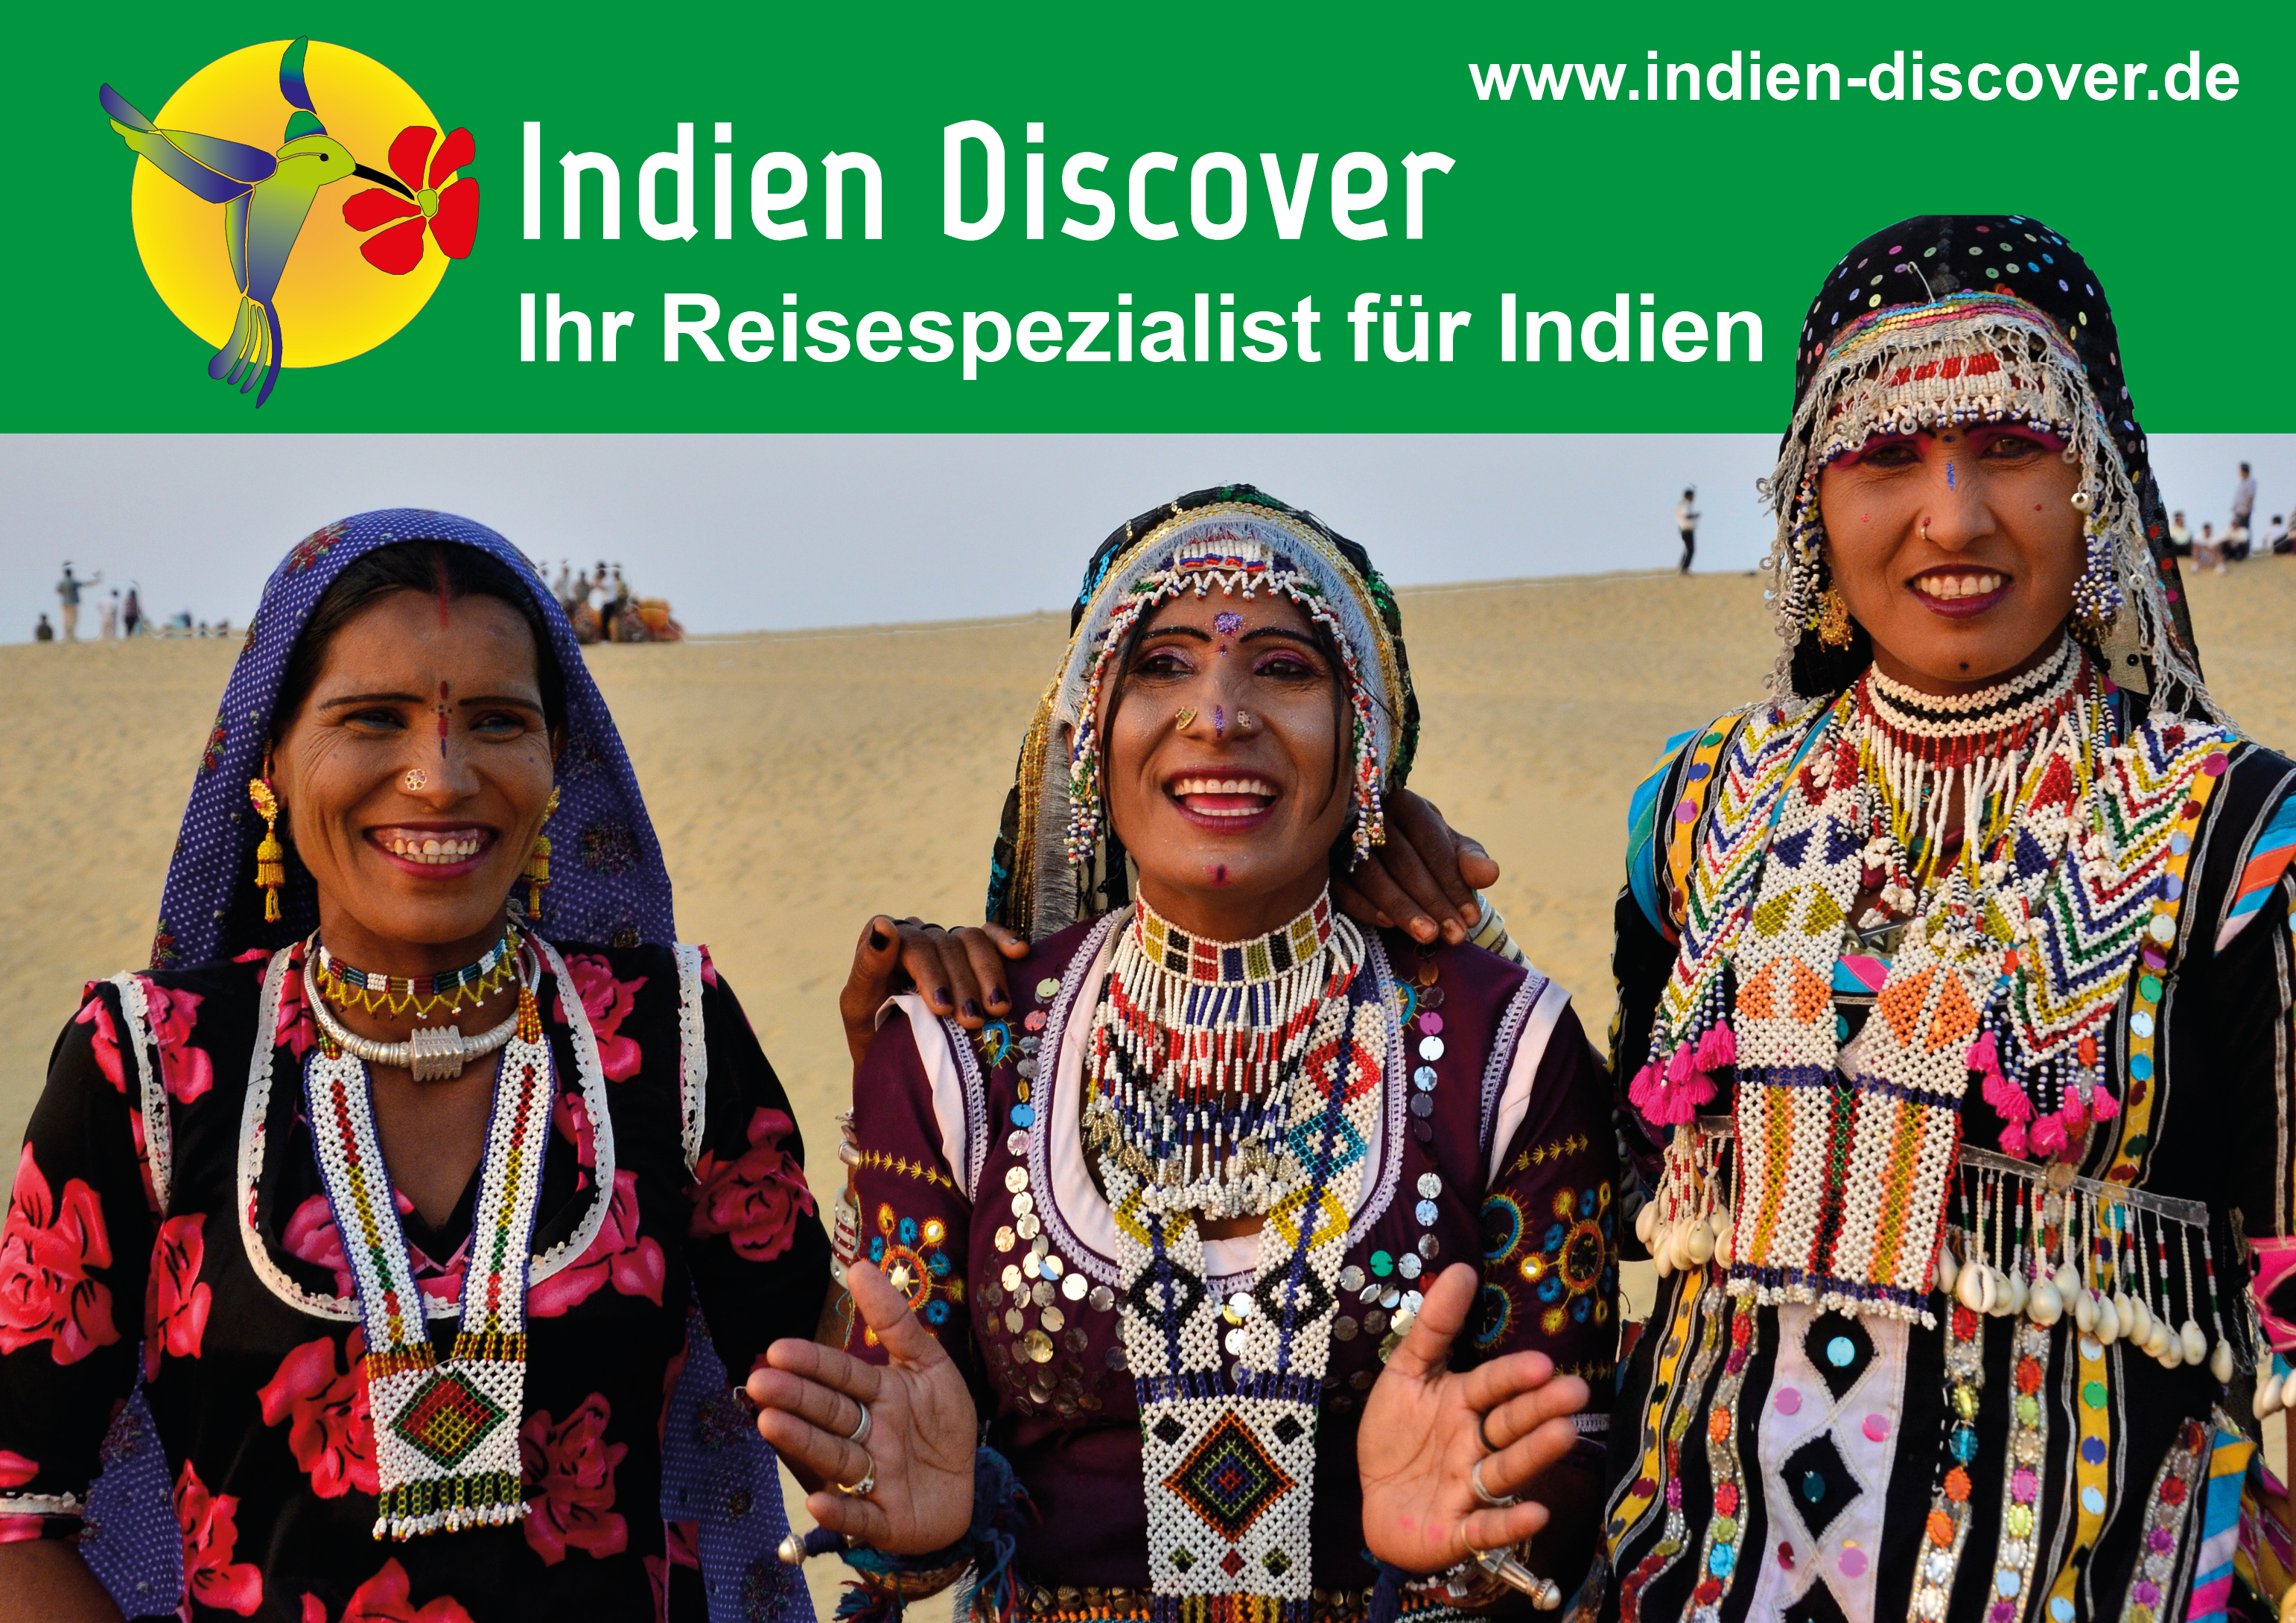 www.indien-discover.de